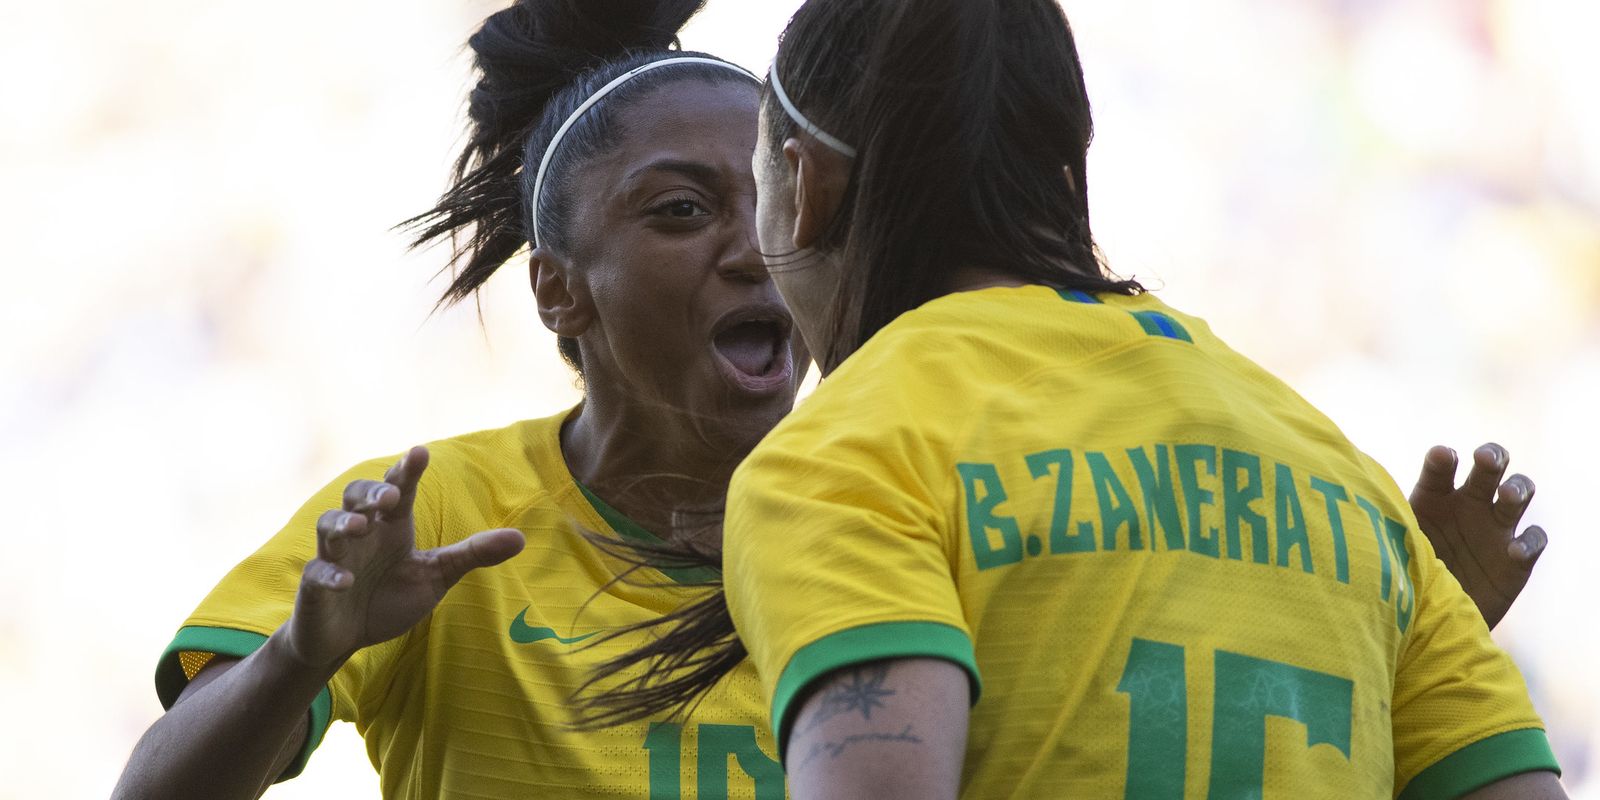 Começam os Jogos: futebol feminino estreia hoje, no Rio - Rede Brasil Atual